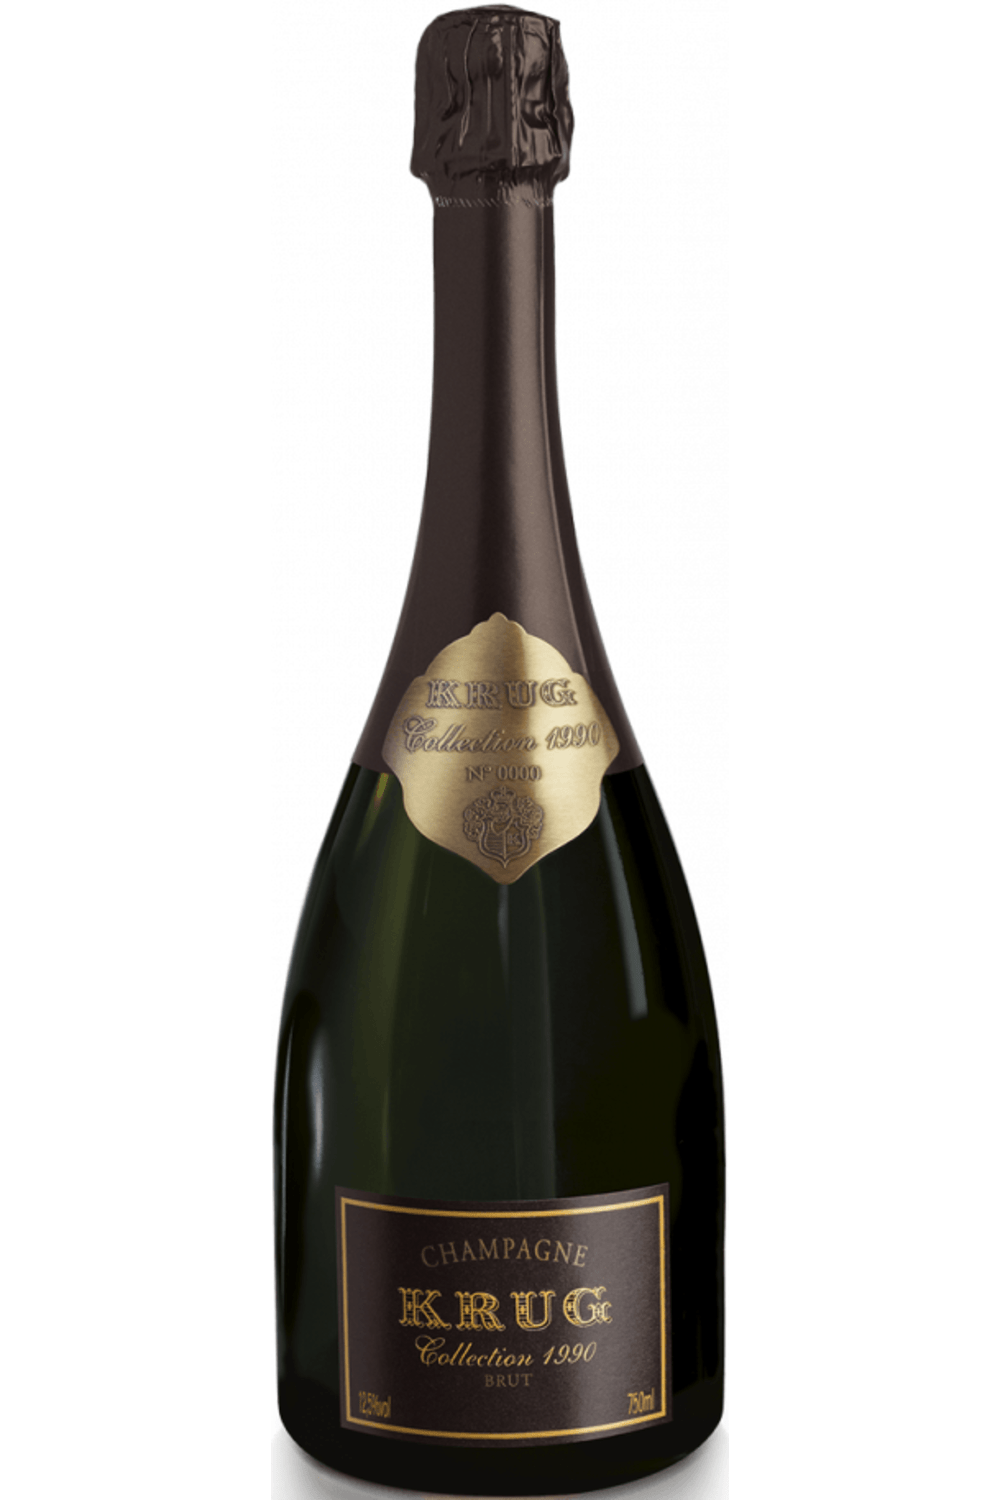 1996 Krug Champagne Vintage Brut 750ml